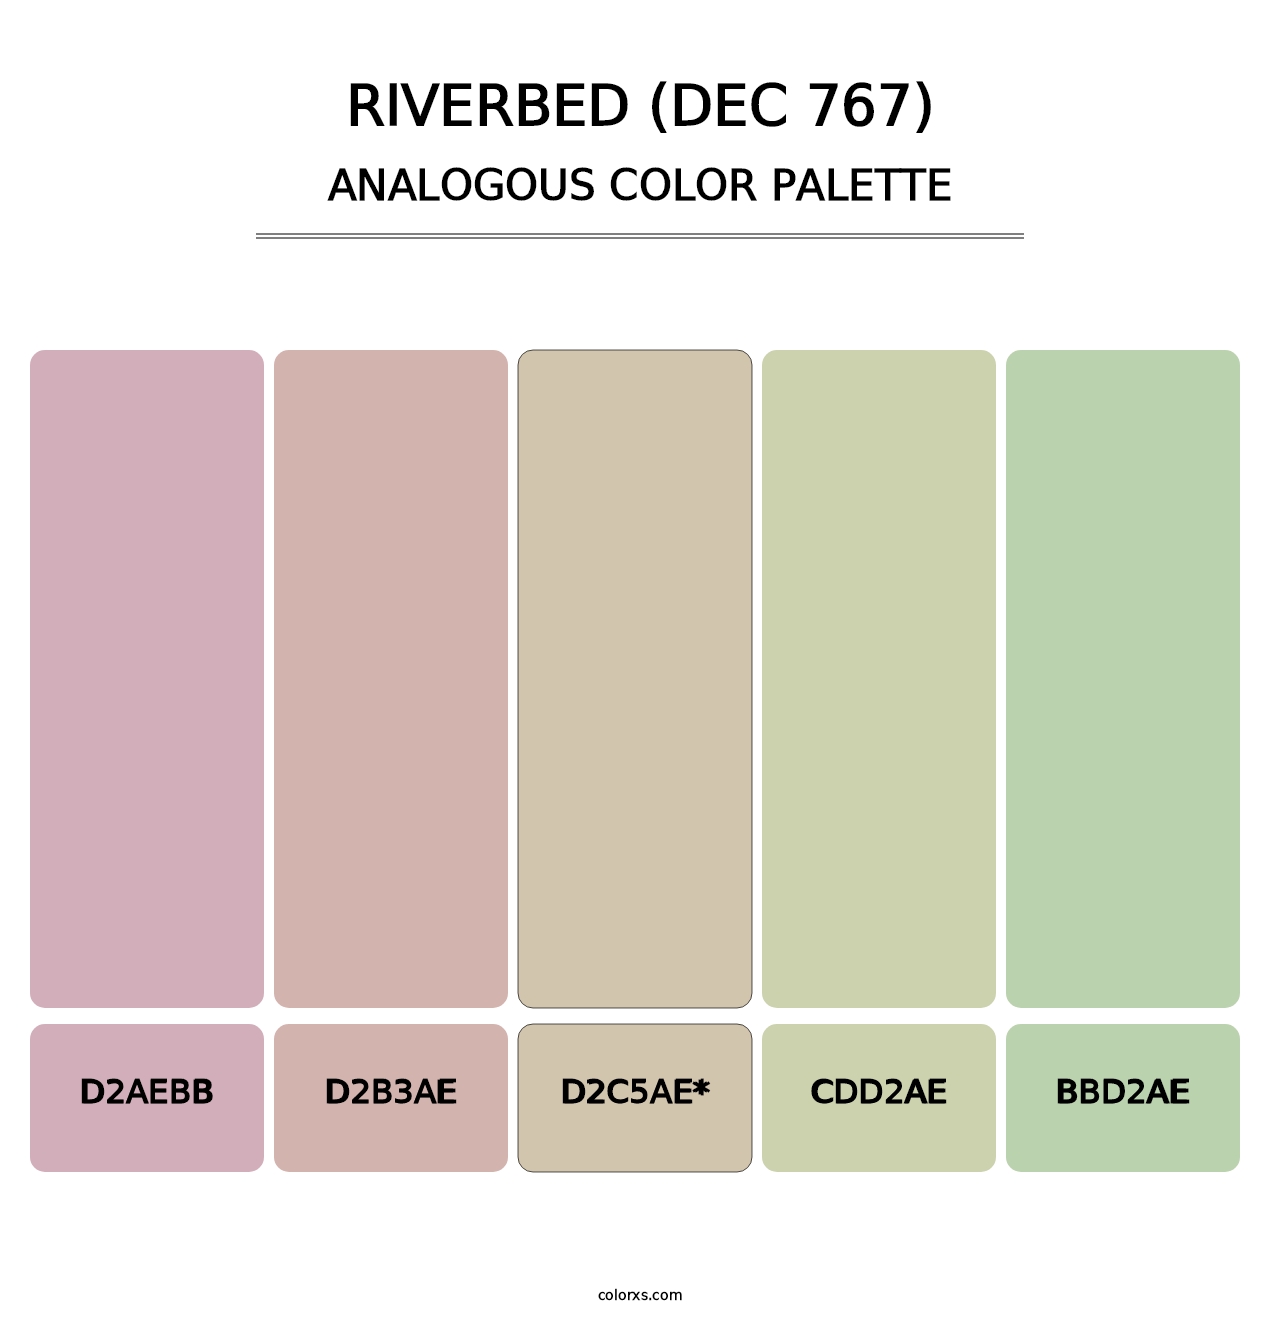 Riverbed (DEC 767) - Analogous Color Palette